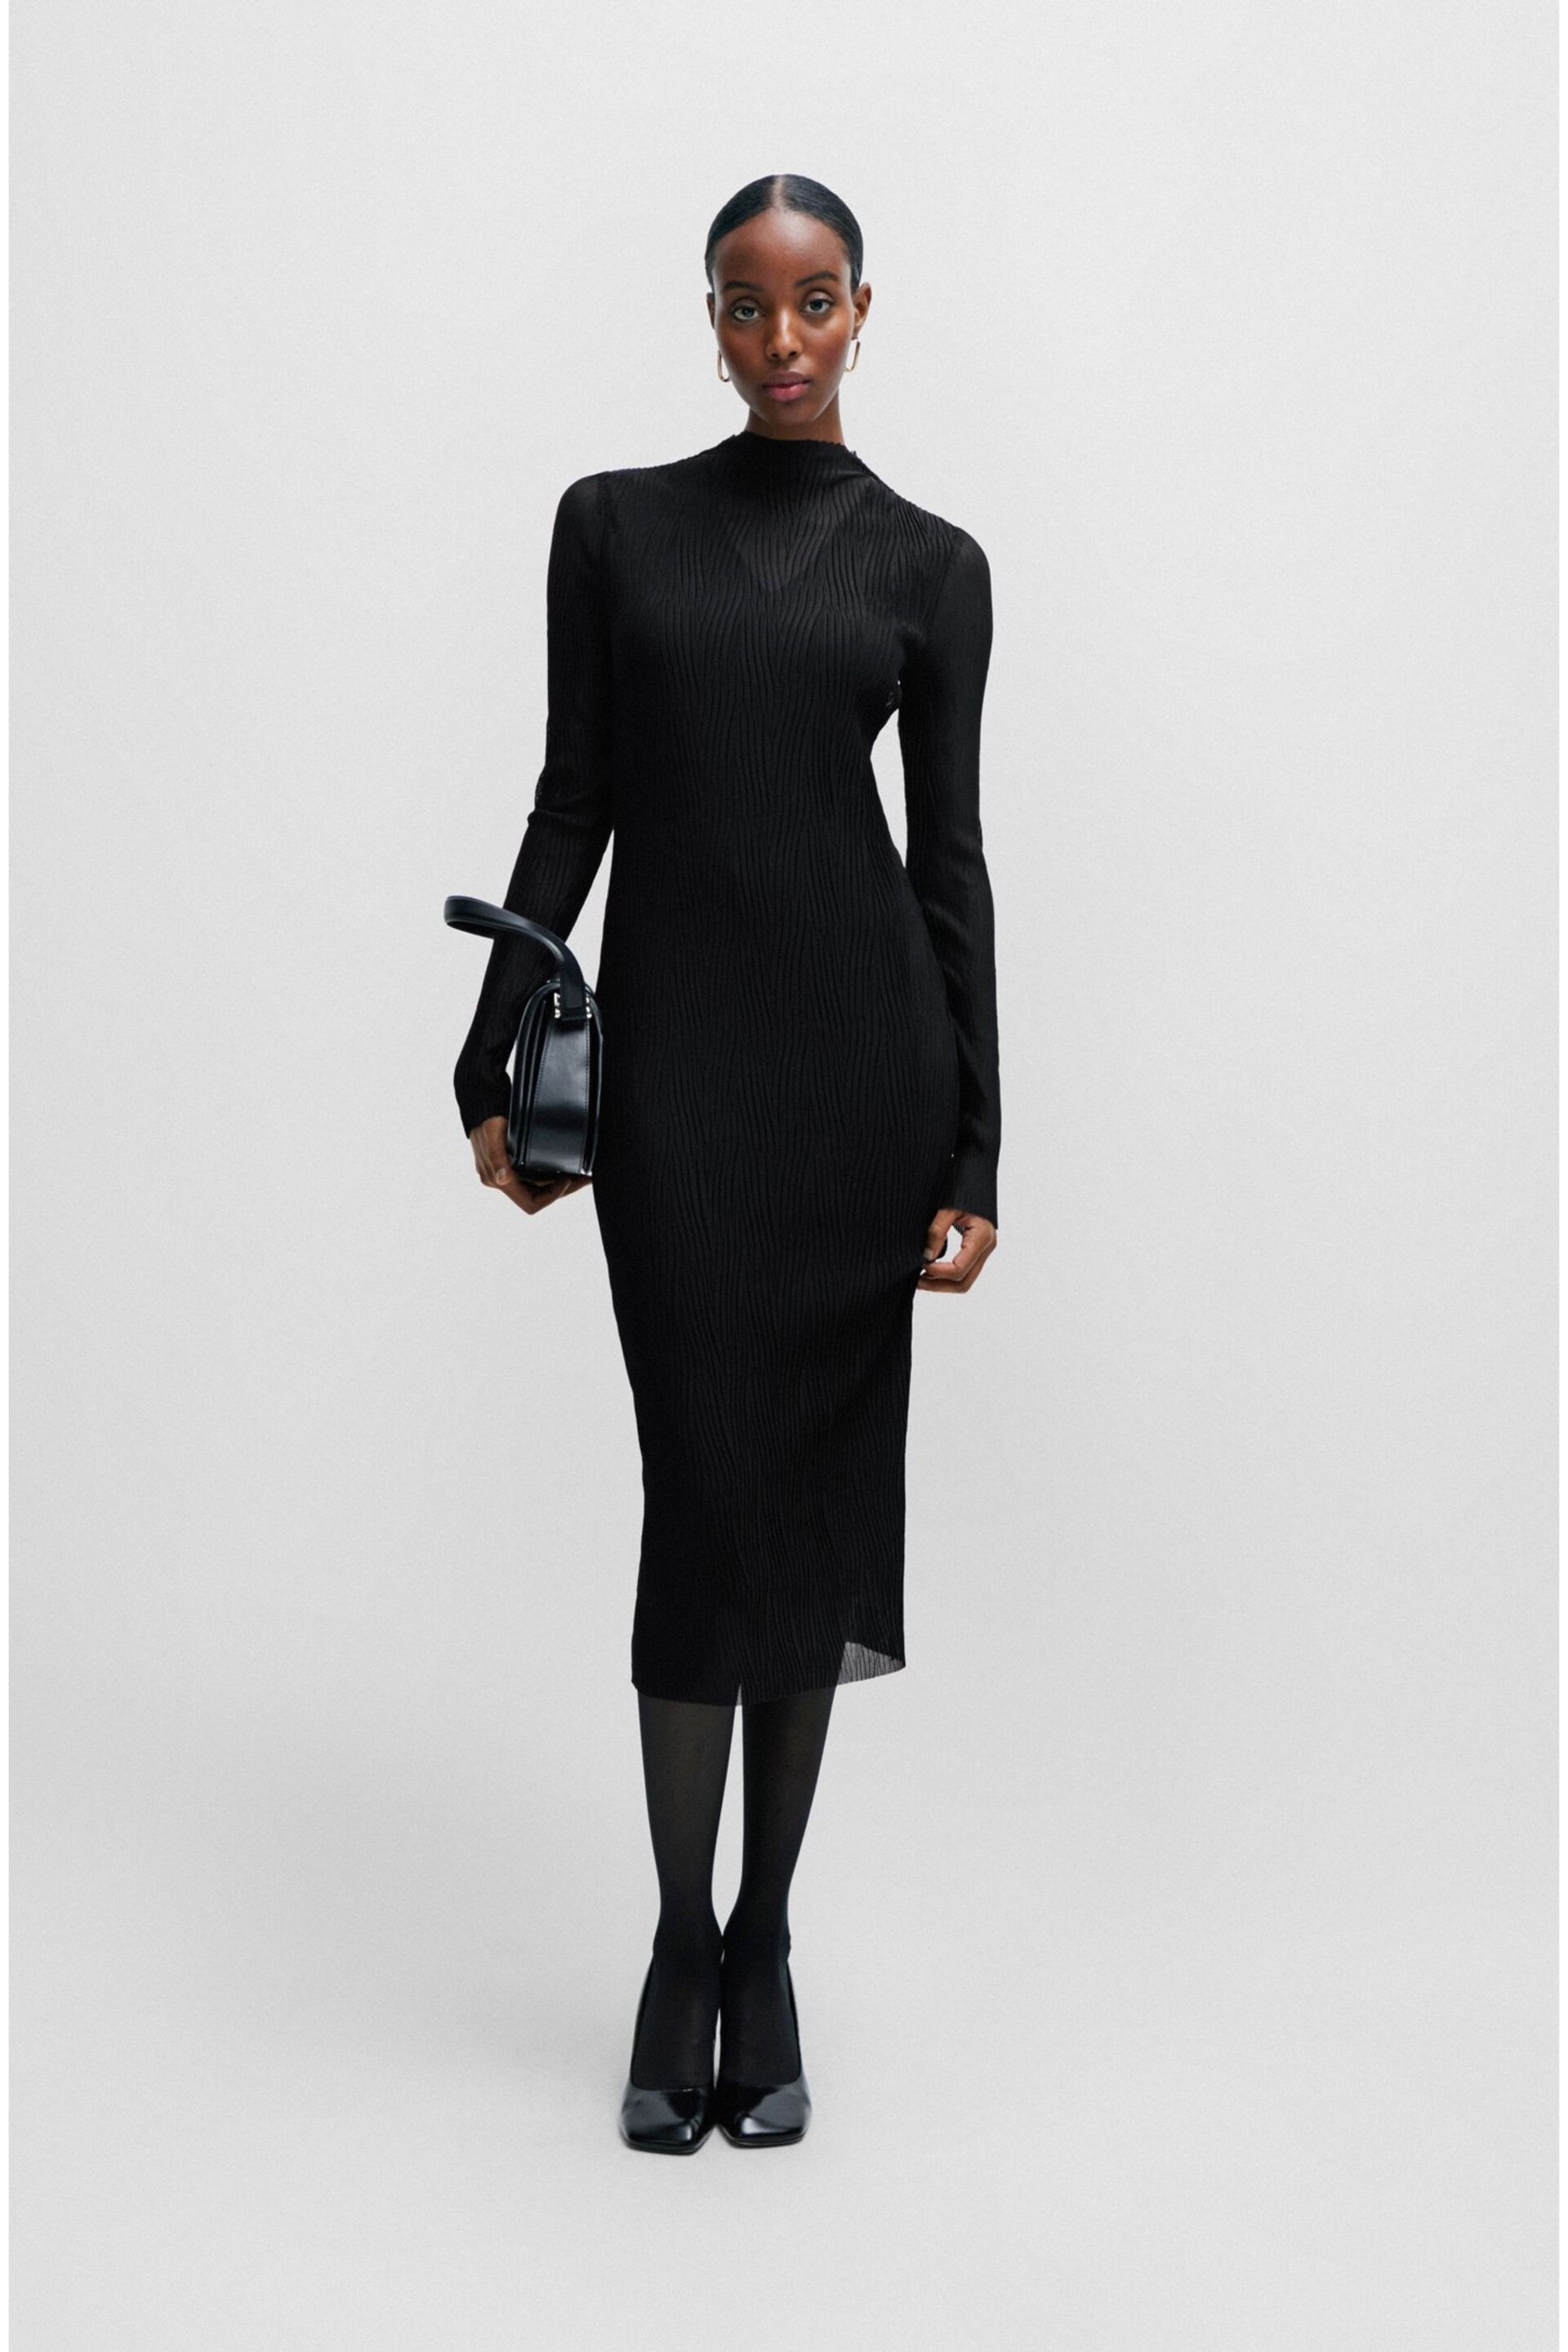 BOSS Black Plisse Pleats Tulle Textured Midi Dress - Image 2 of 6